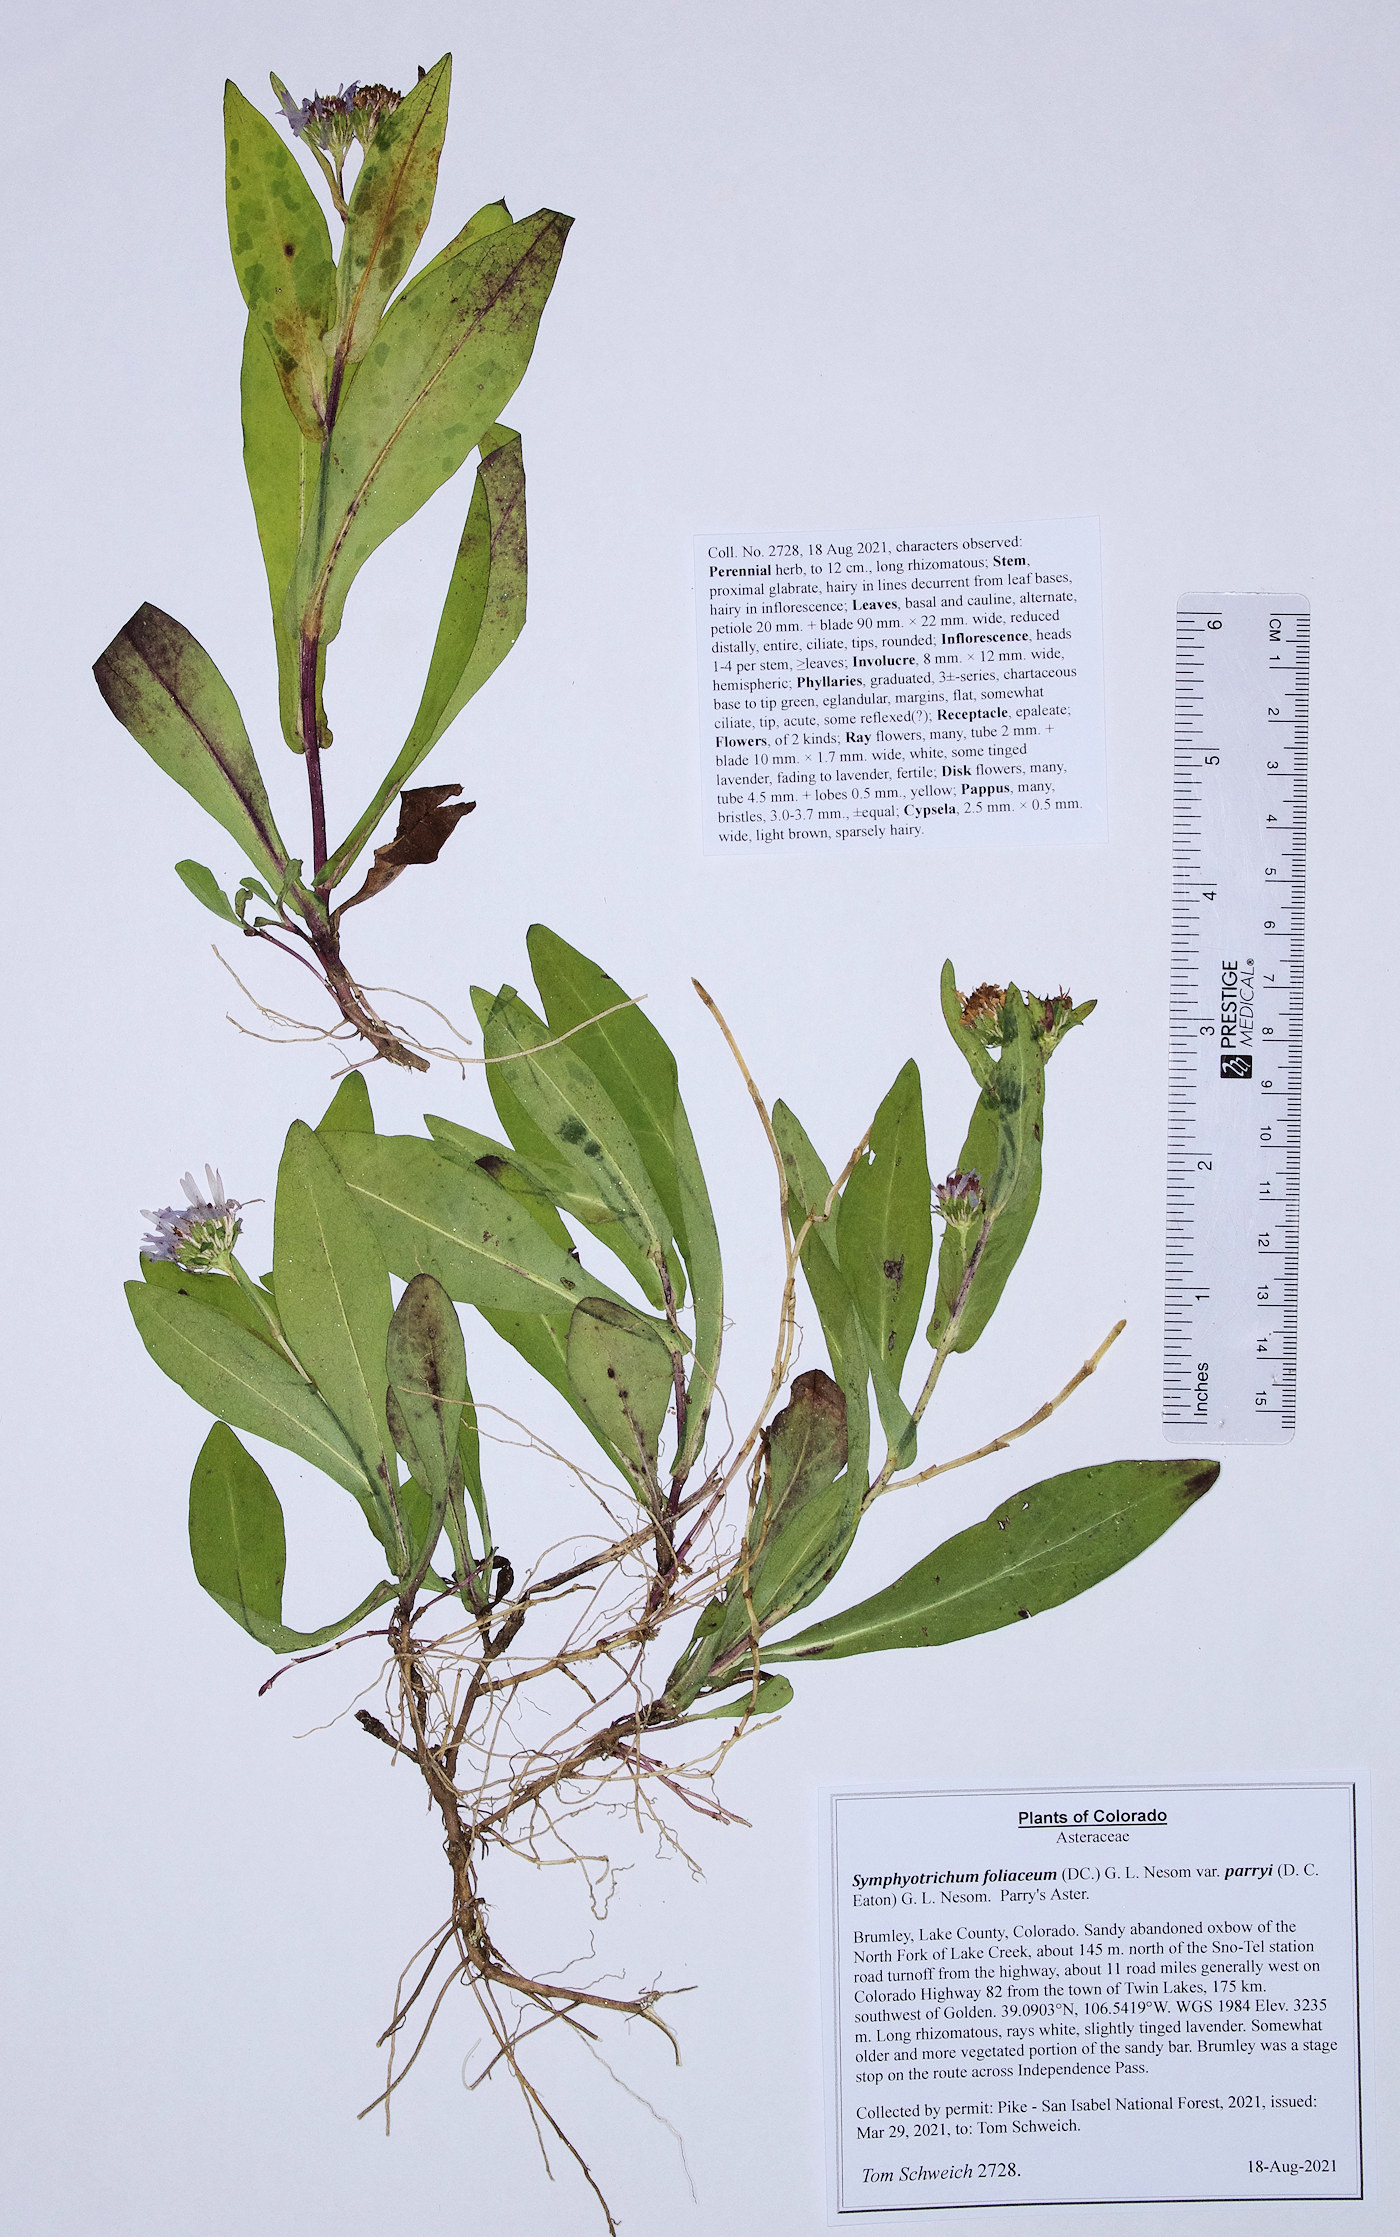 Asteraceae Symphyotrichum foliaceum parryi